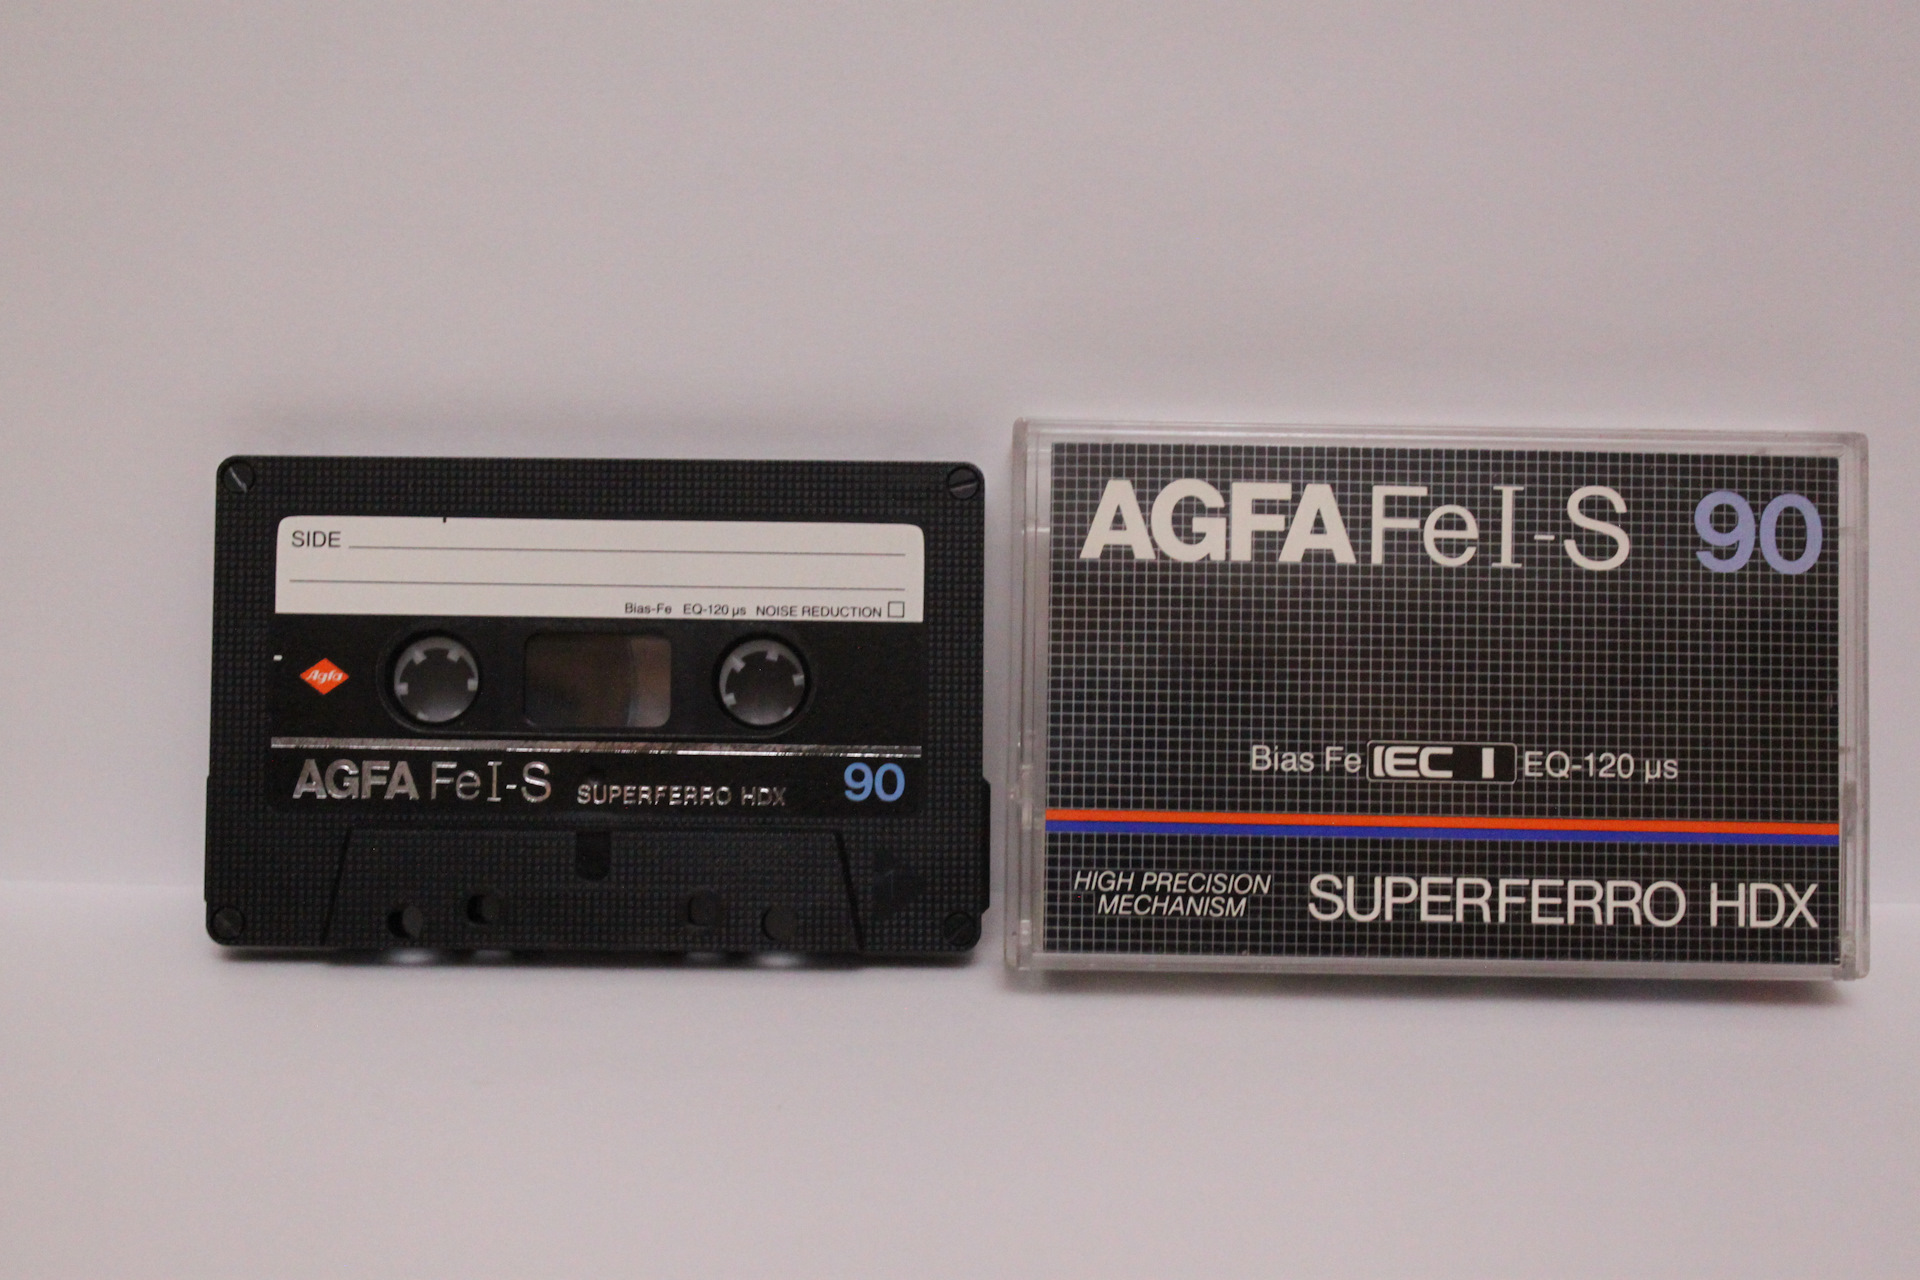 Батину кассету. Кассета для магнитофона Agfa Superferro. Аудиокассета Agfa Fe i. Кассеты 80-х годов Agfa. Hdx кассеты для магнитофона.